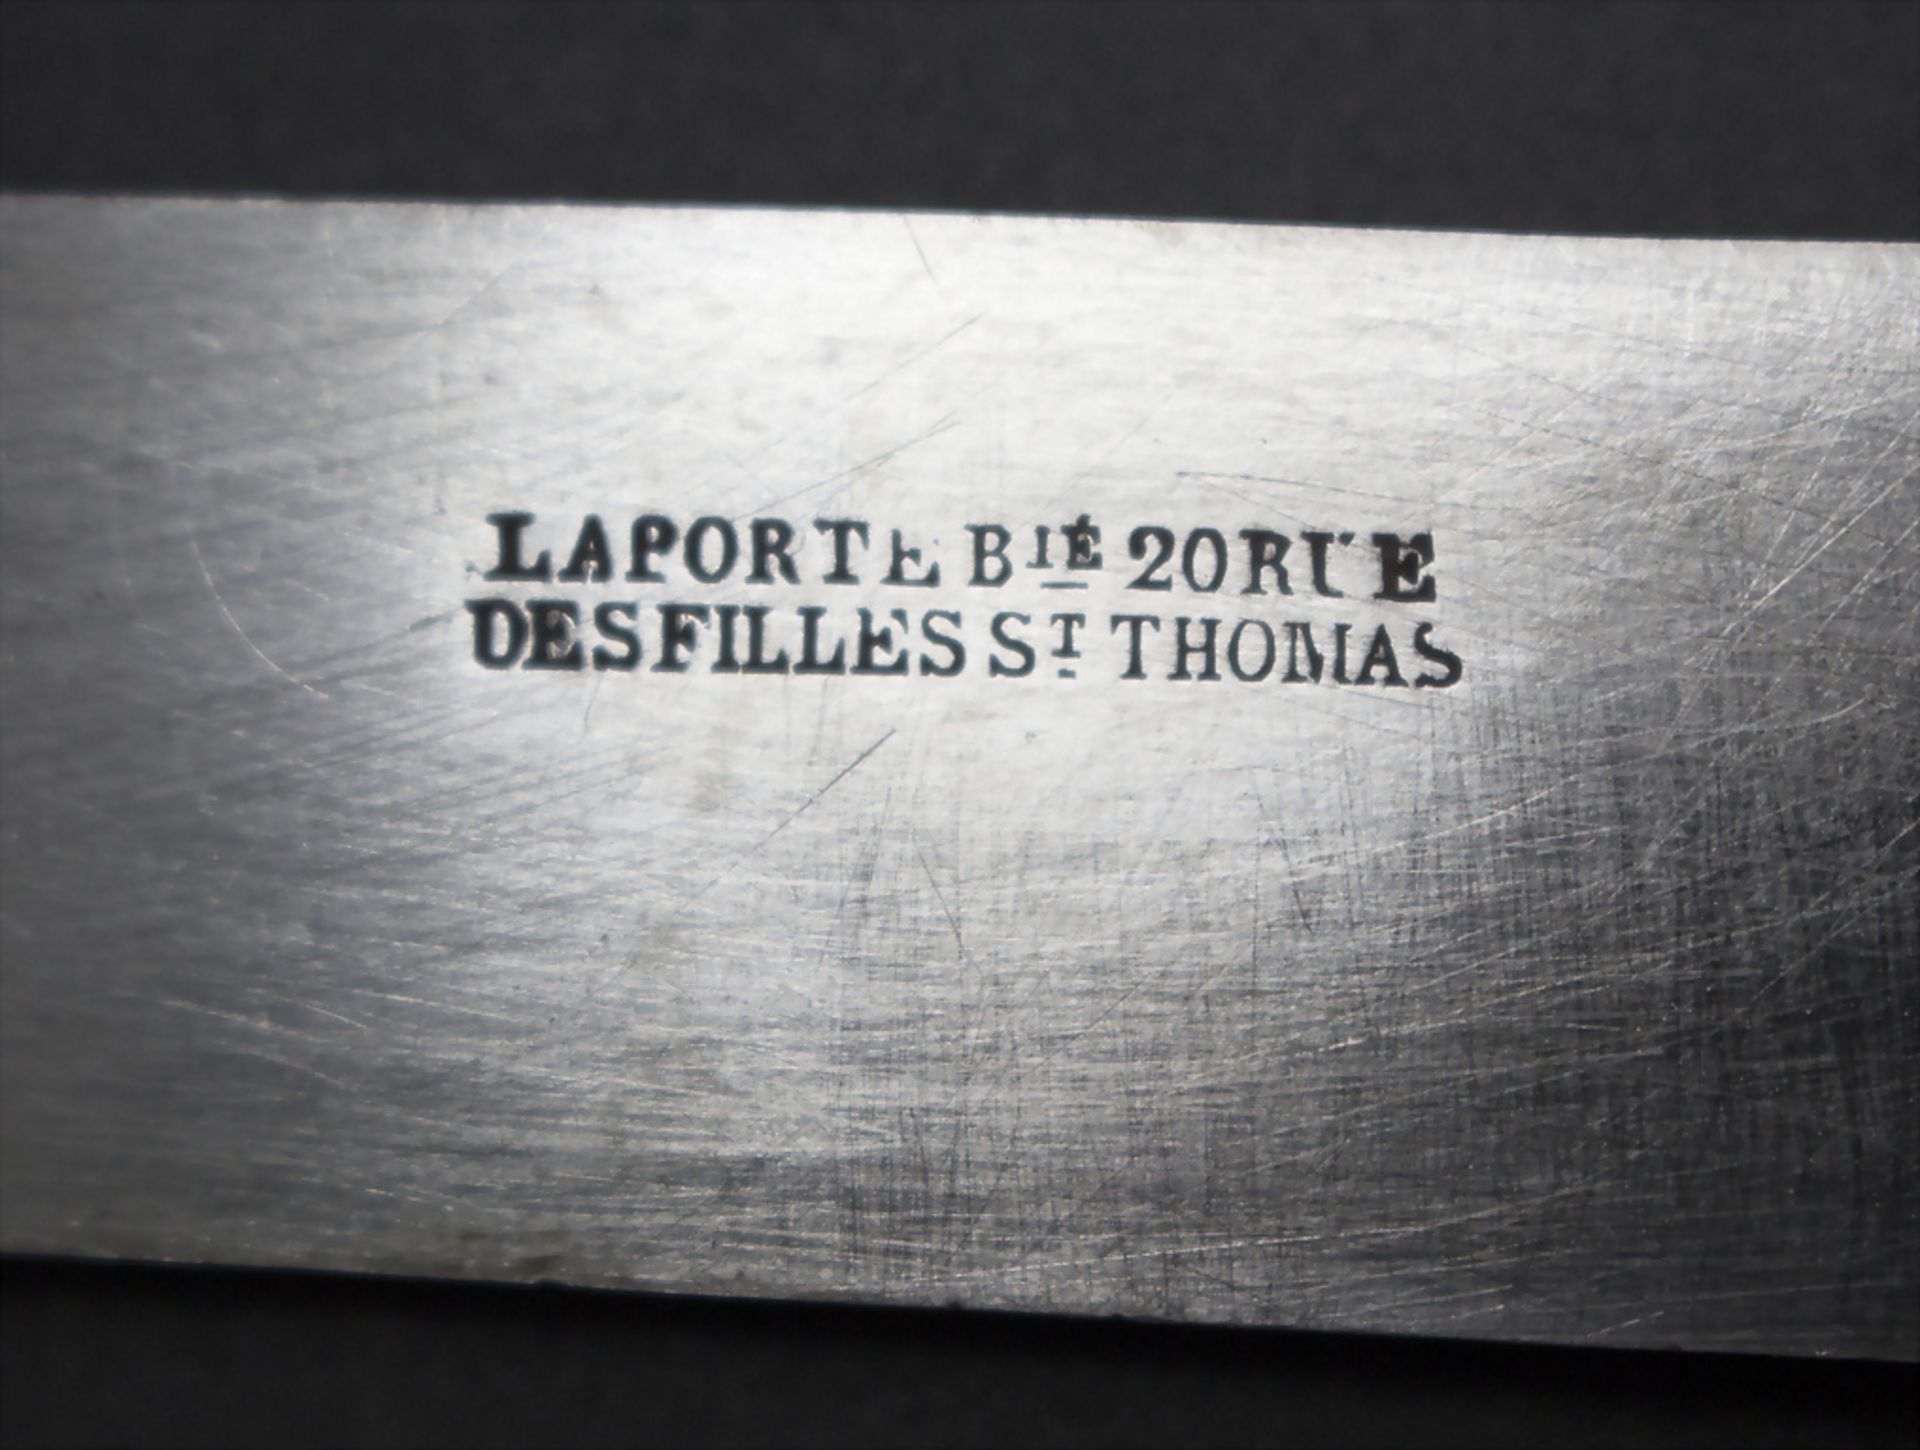 12 Messer / 12 knives, Prudent Quitte u. Dominique Laporte, Paris, um 1853-1882 - Image 4 of 4